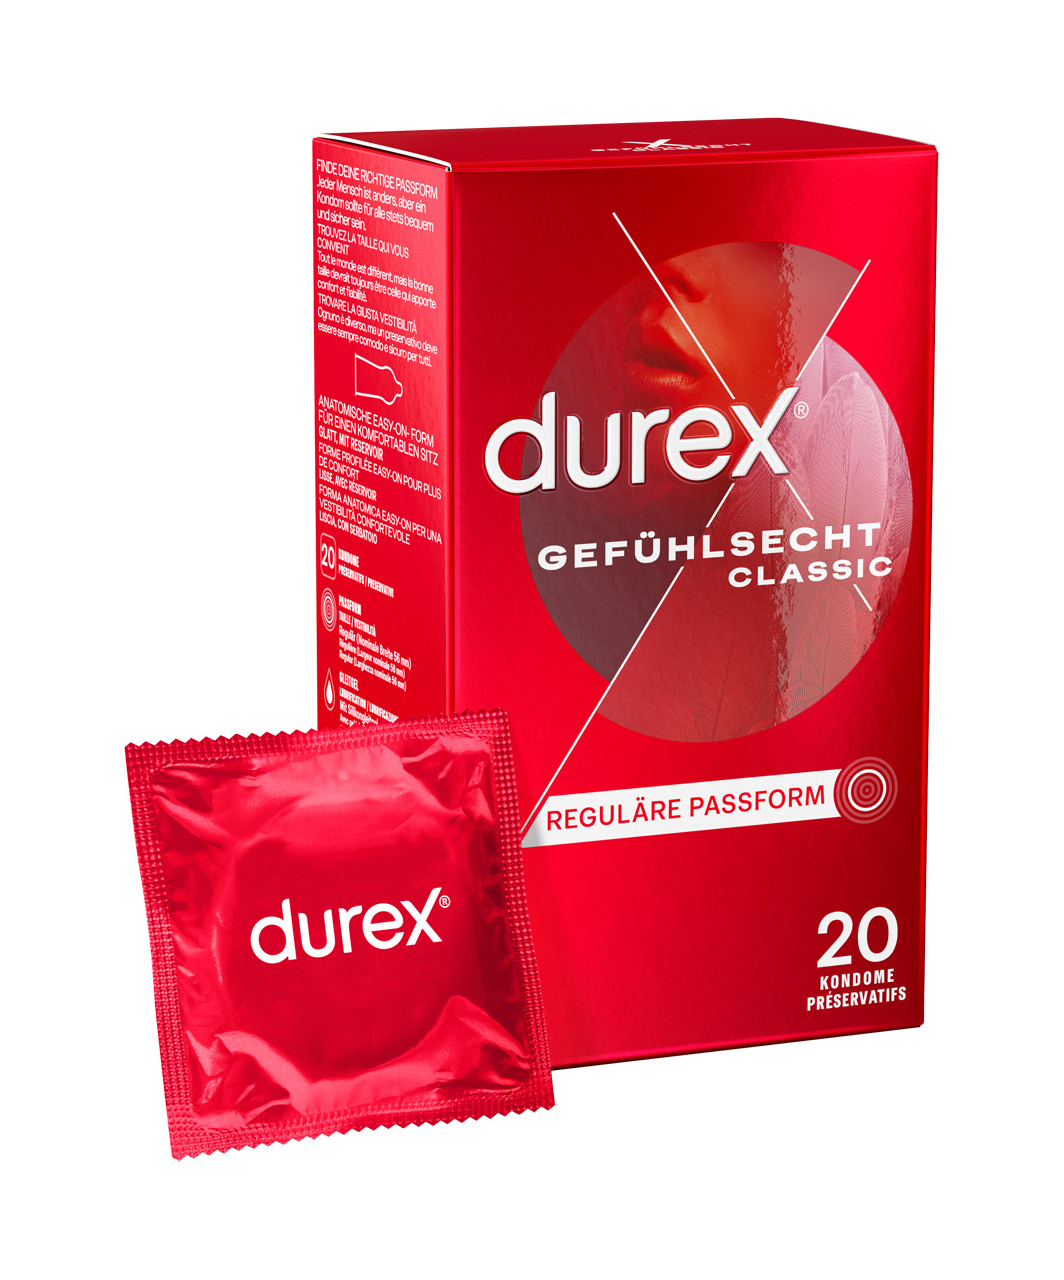 Durex Sensitive презервативы (3 / 20 шт.)